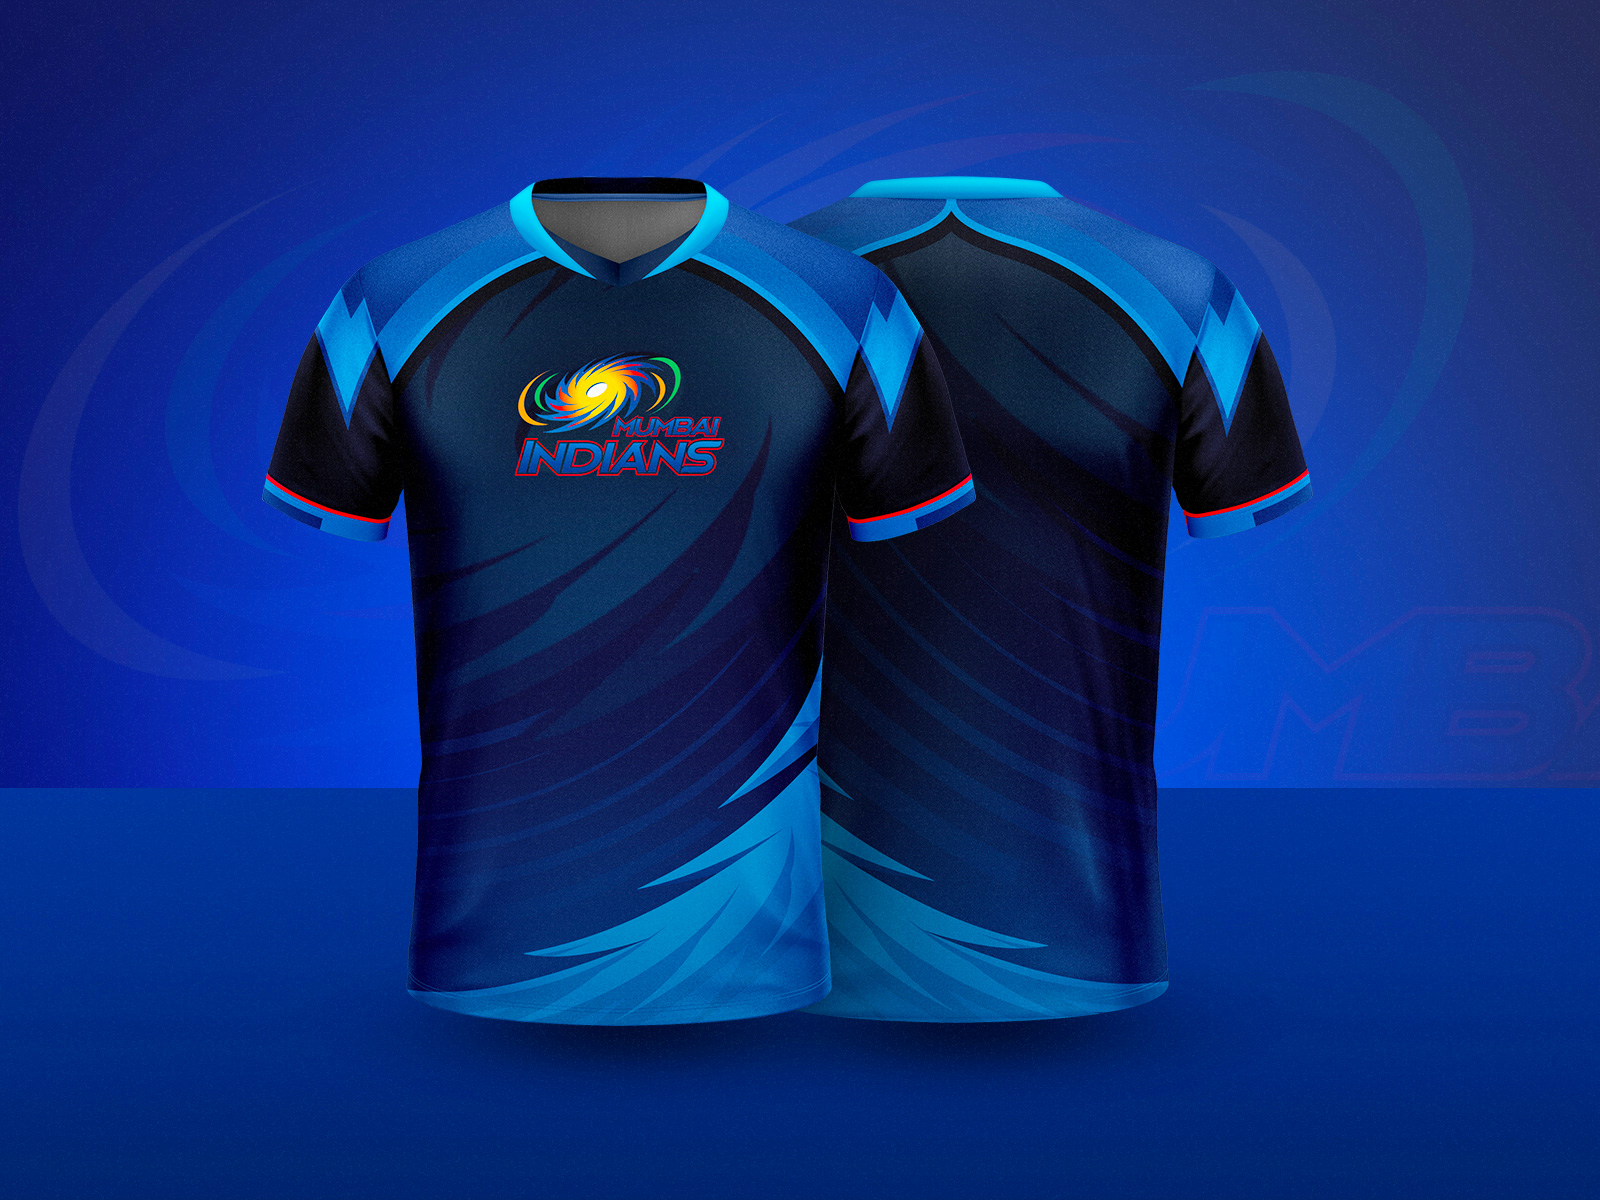 new cricket shirt design 2019